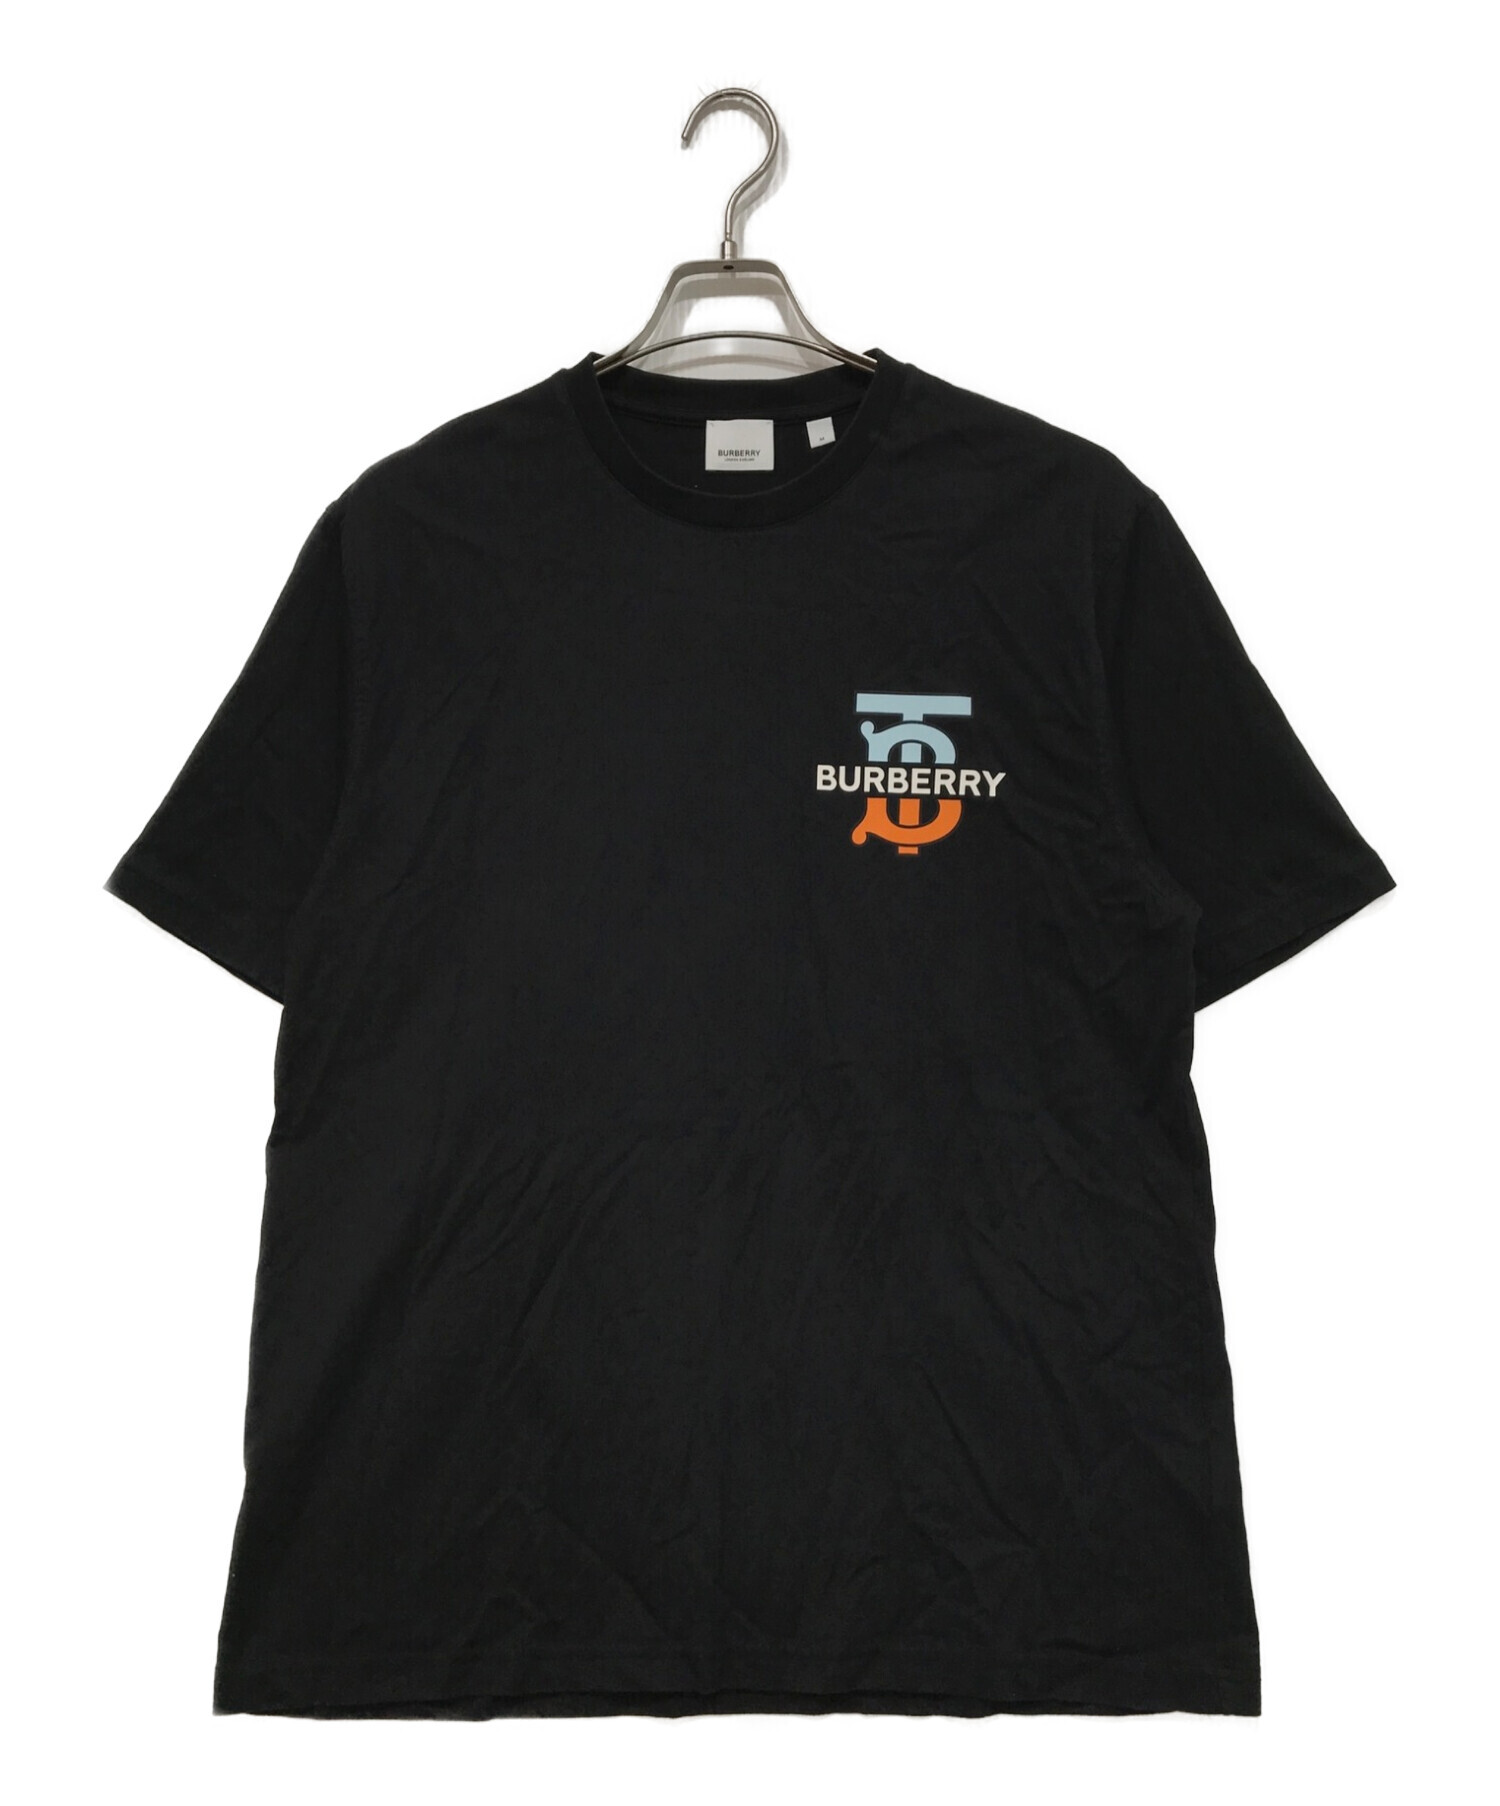 BURBERRY (バーバリー) モノグラムロゴTシャツ ブラック サイズ:M